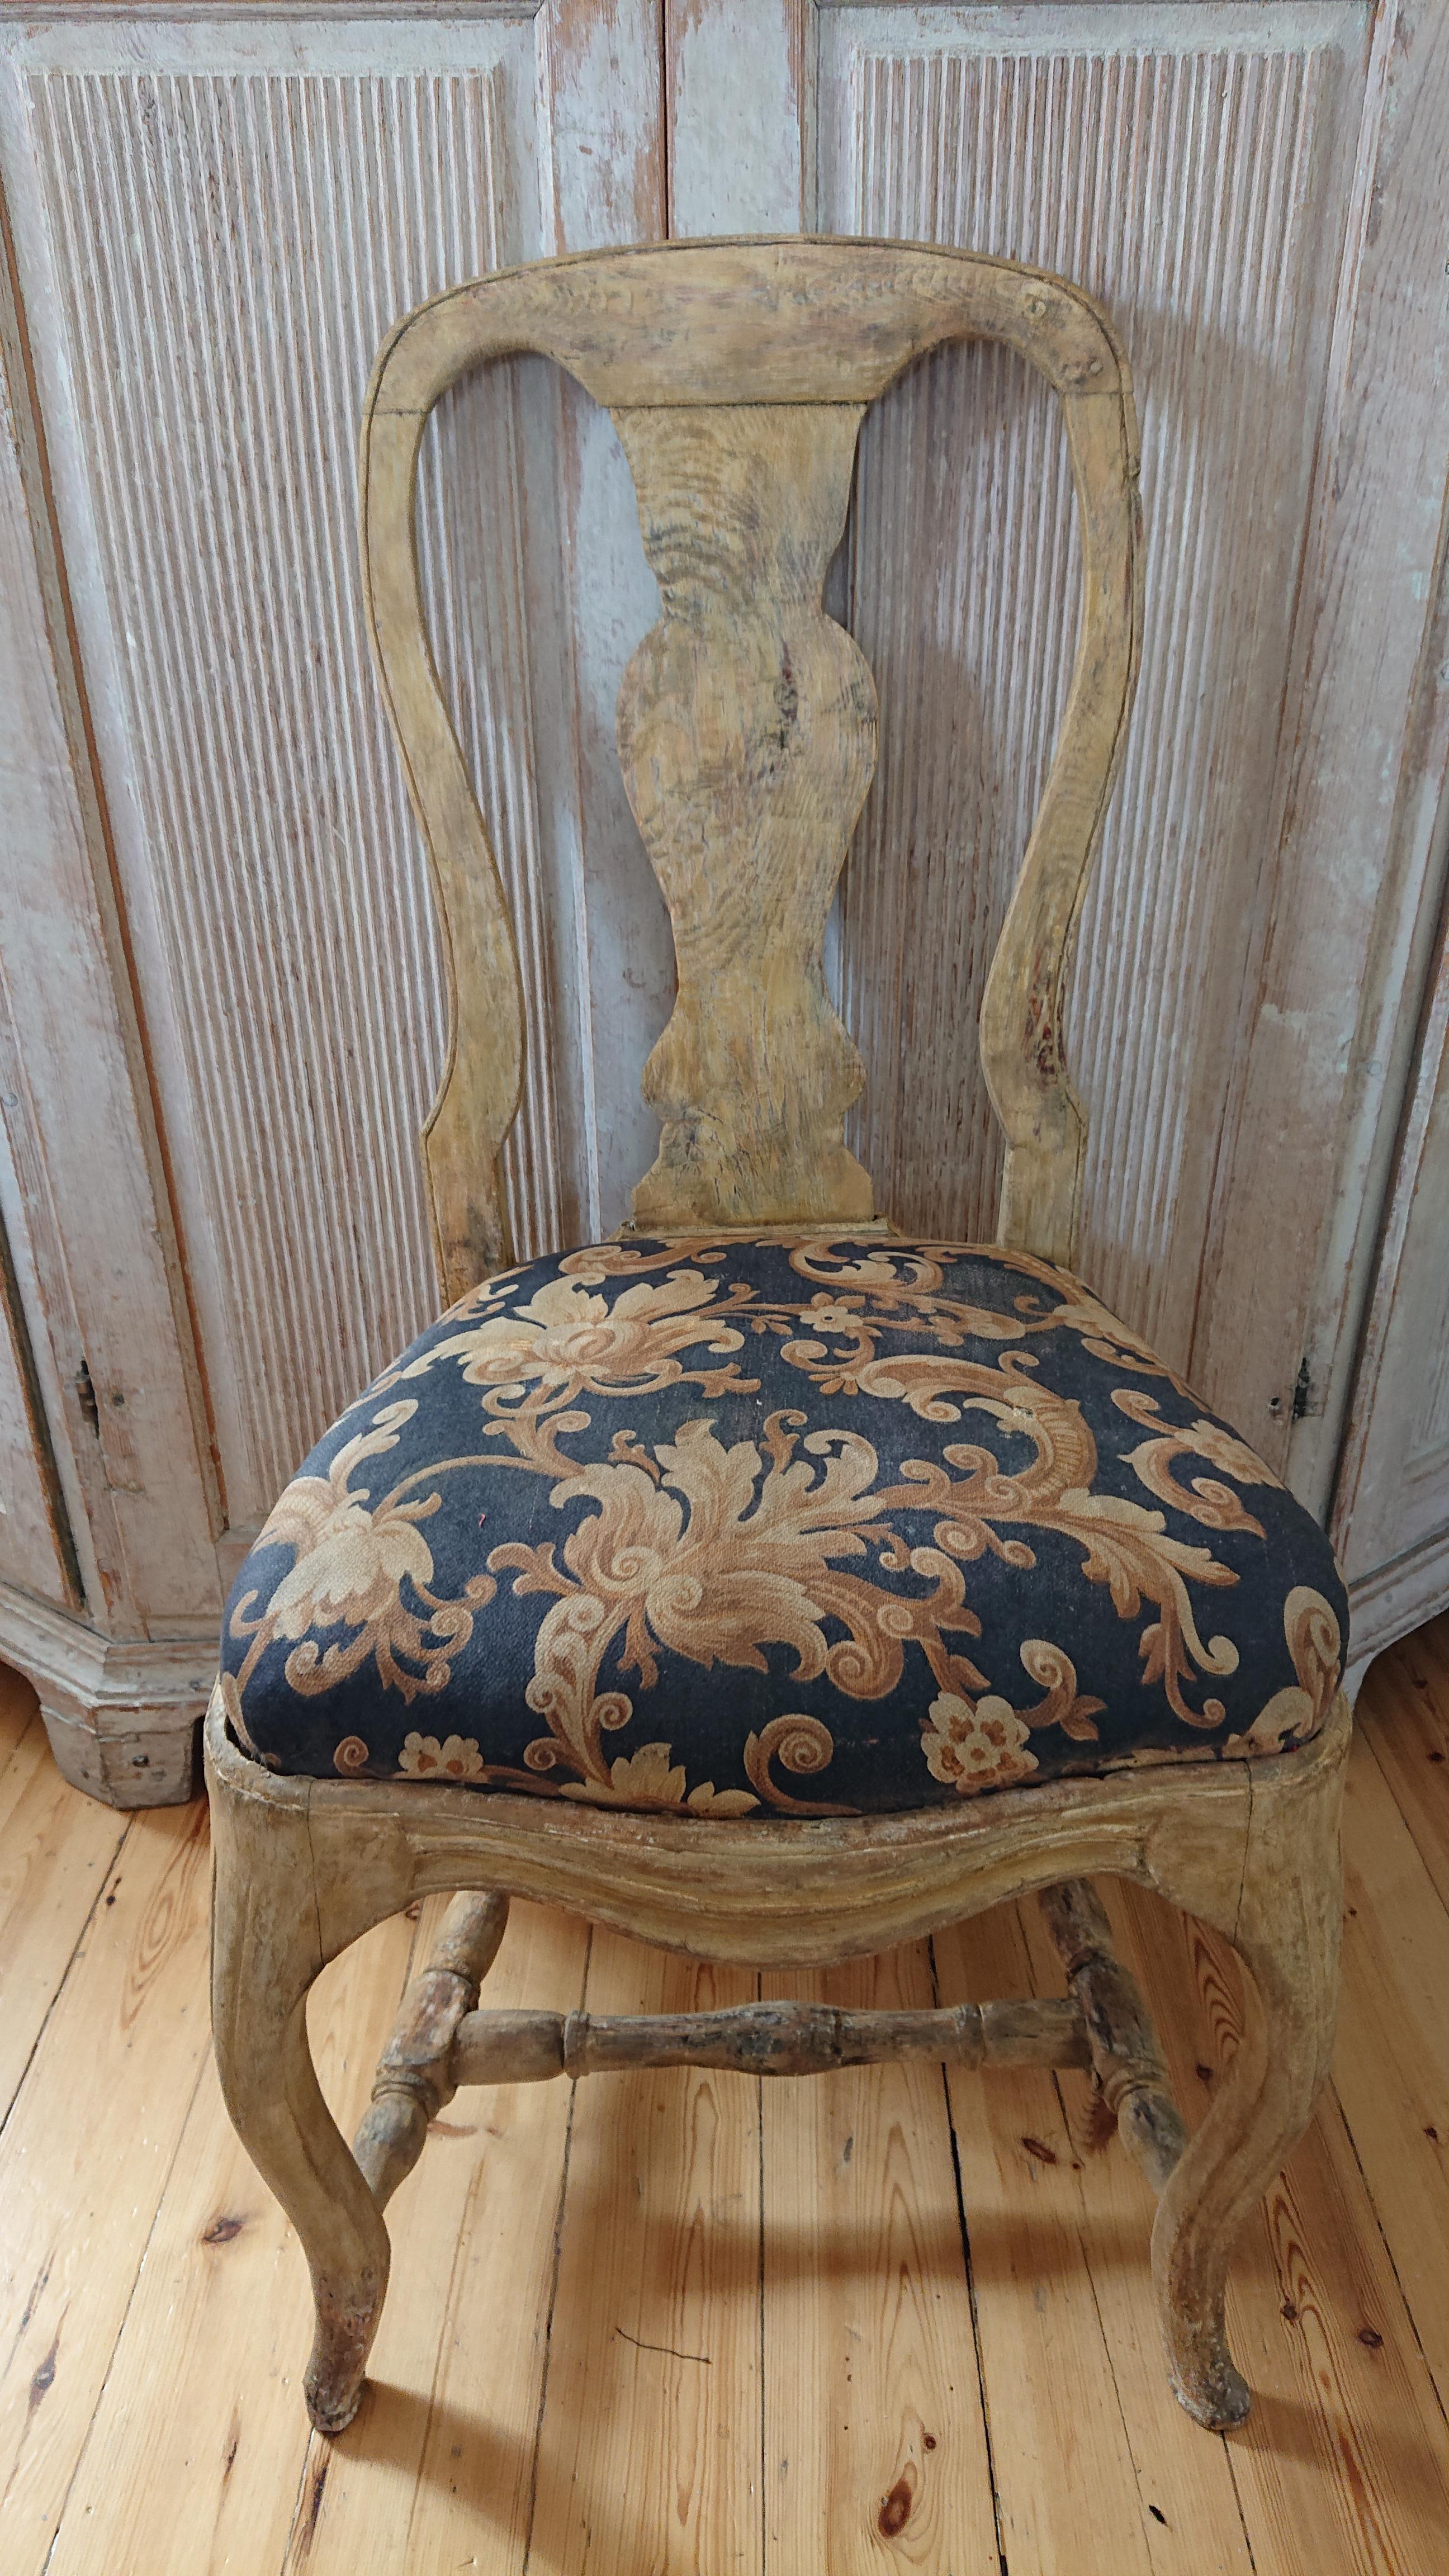 Belle chaise Roccoco suédoise du 18ème siècle avec les marques de (The Swedish Royal Treasury) HGK 
Il vient de l'environnement de la classe supérieure.
Une chaise fantastique avec de belles proportions et des pieds incurvés.
Grattée à la main